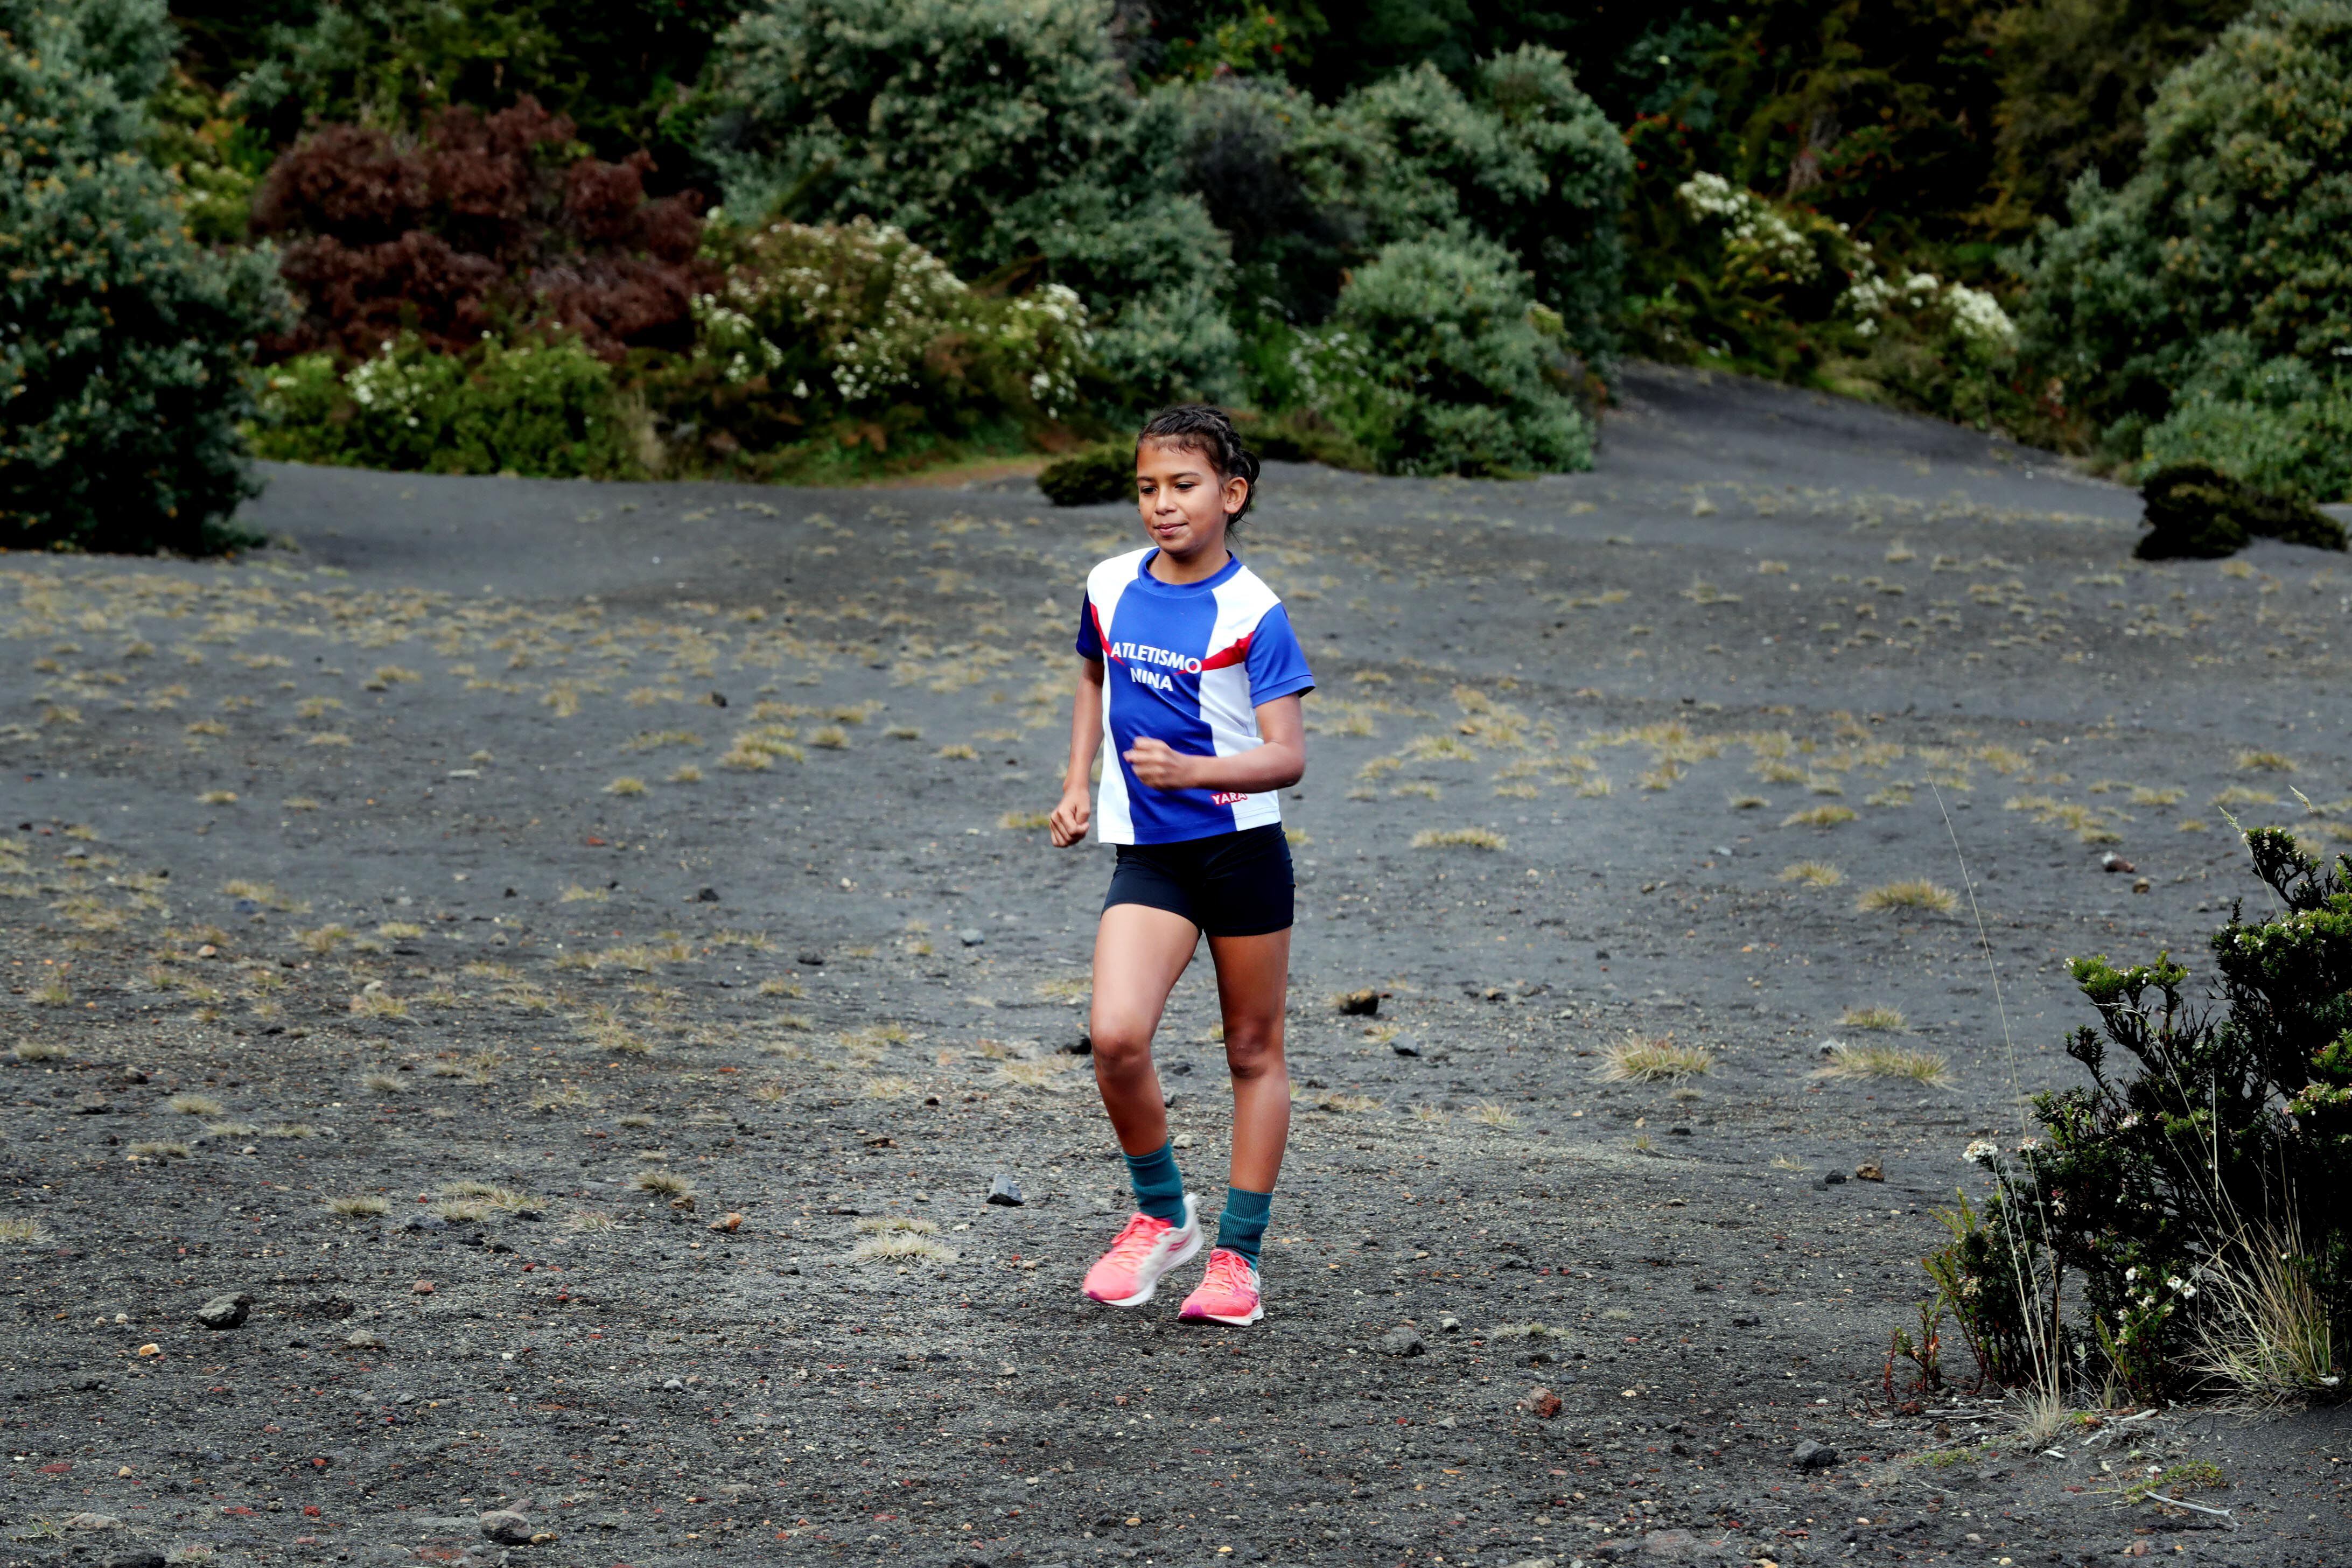 Yara Fiorella Moya entrenó en el Volcán Irazú esta semana junto a Noelia Vargas y bajo la supervisión  de su entrenadora Dixiana Mena.

